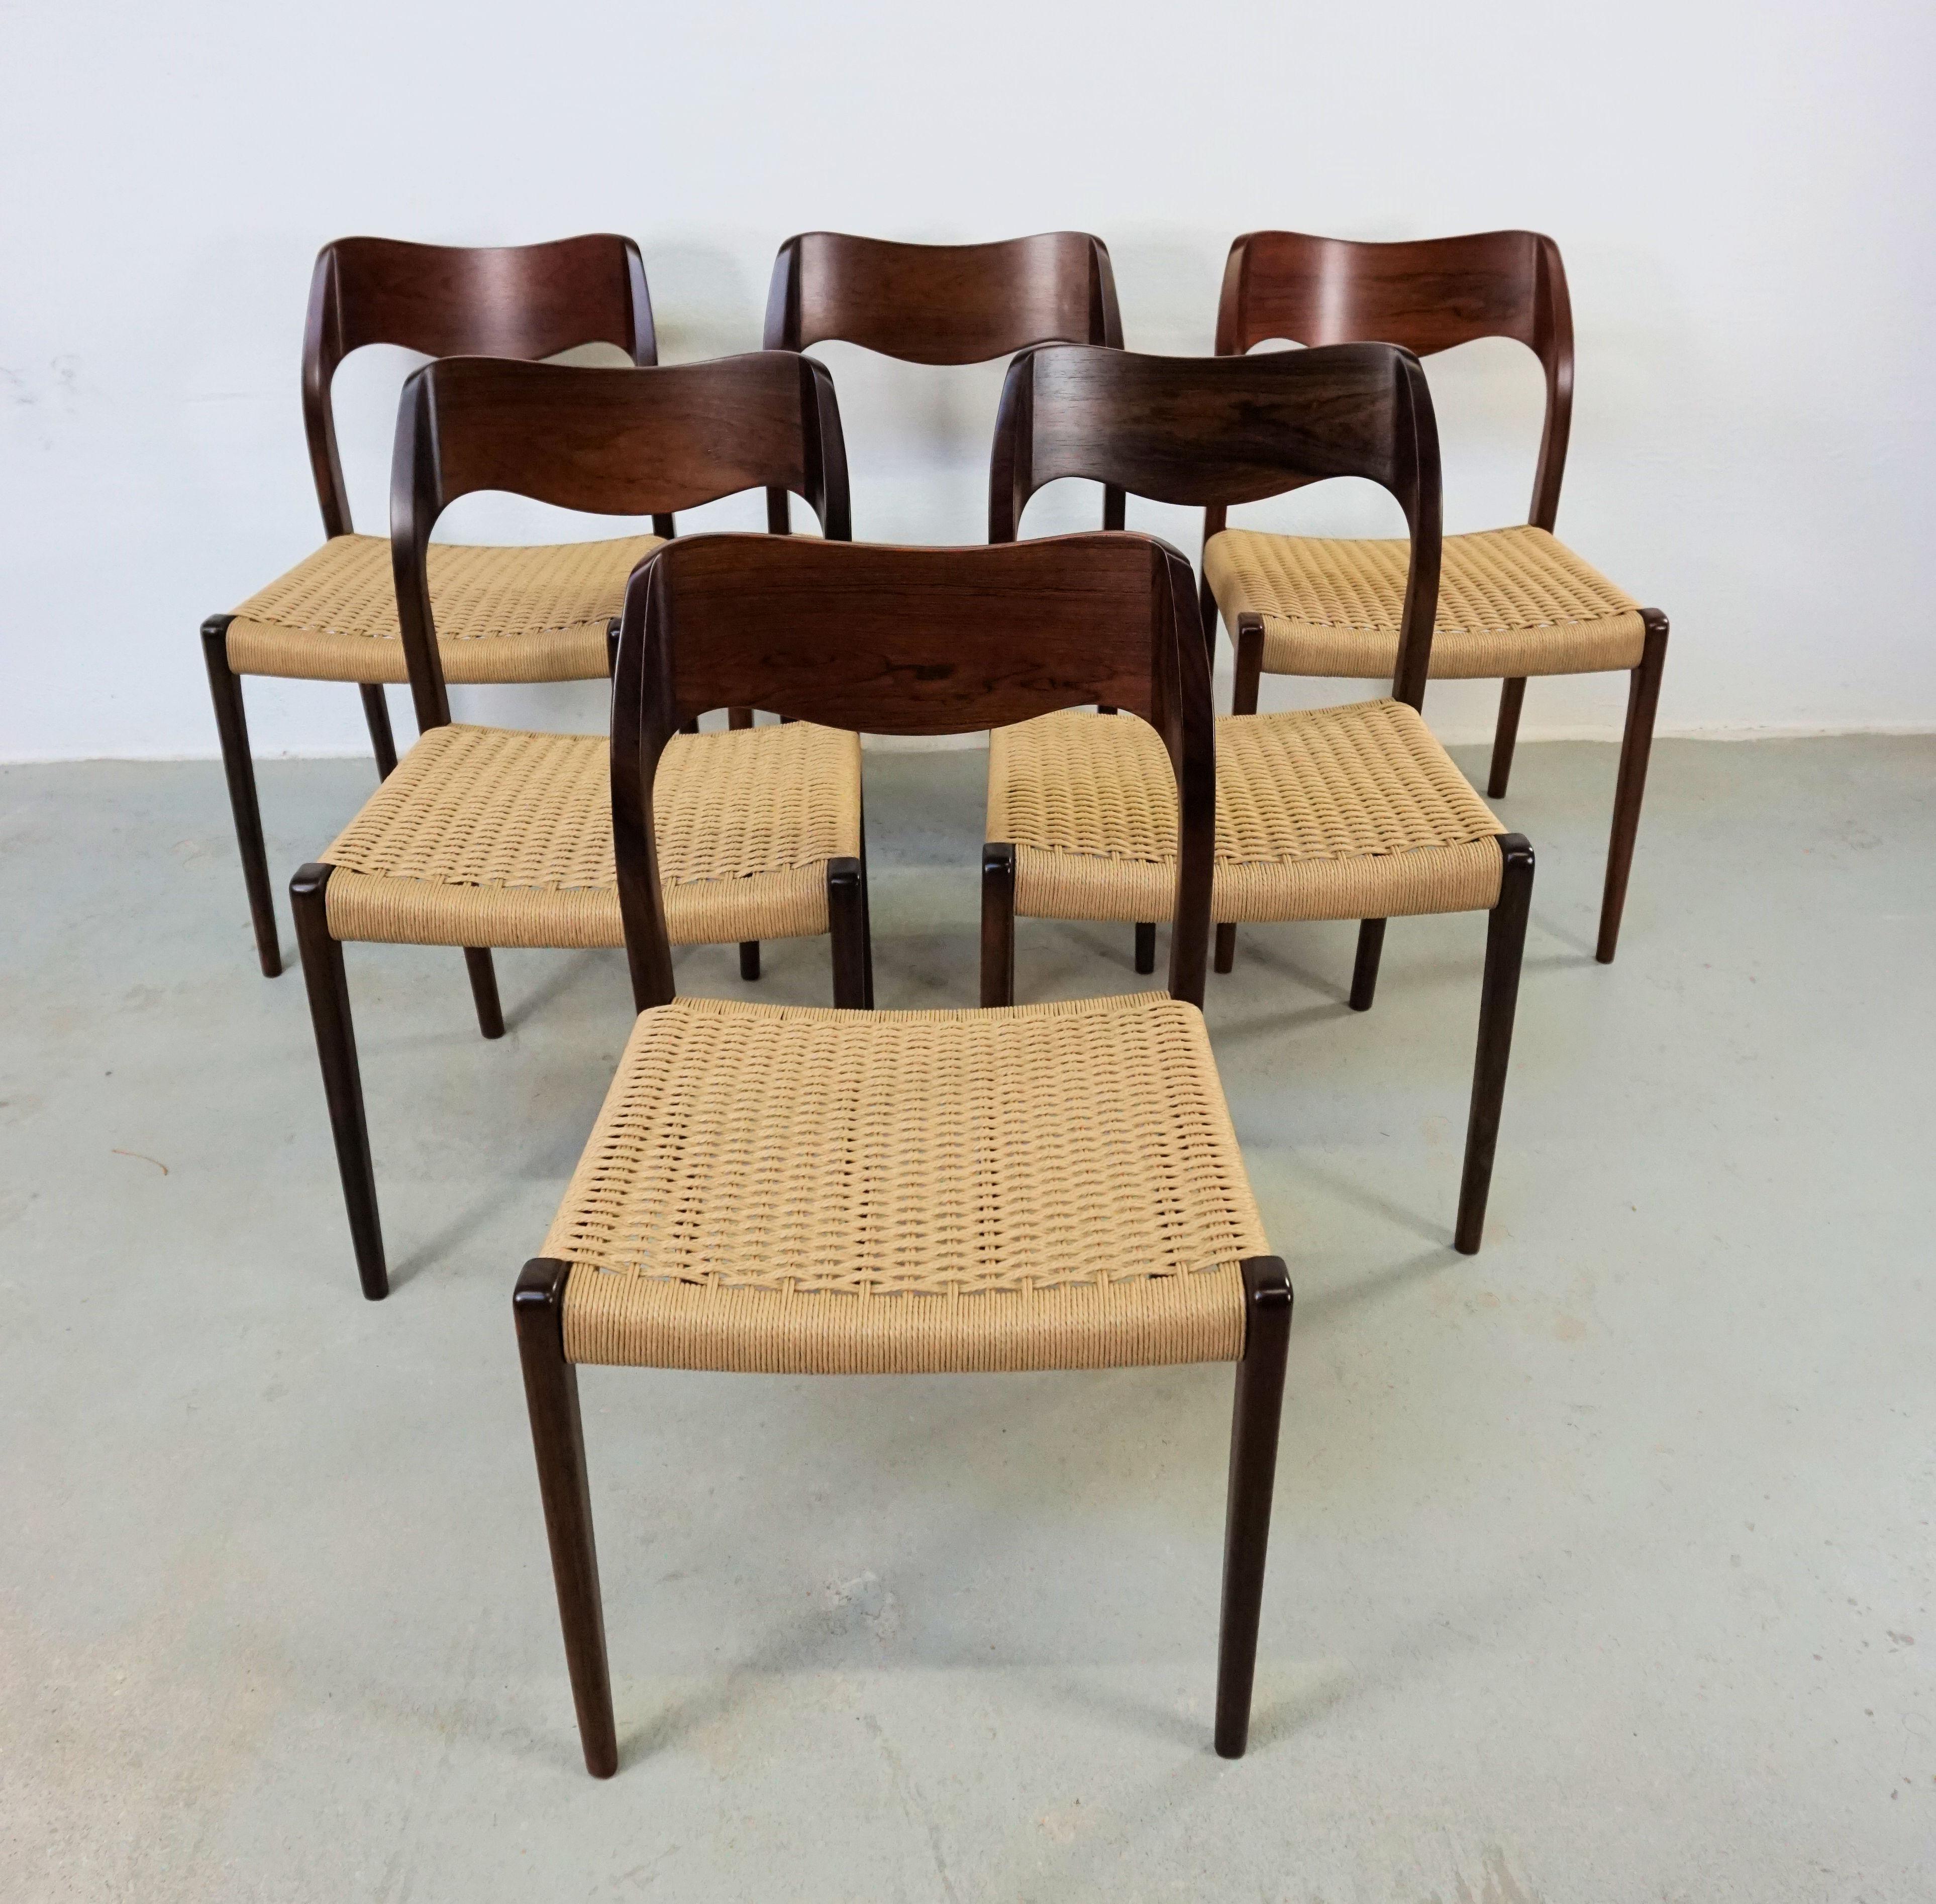 1960er Jahre Niels Otto Møller sechs Esszimmerstühle aus Palisanderholz mit neuen Papierkordelsitzen, entworfen von Niels Otto Møller 1951.

Die Stühle haben einen massiven Rahmen und eine furnierte Rückenlehne aus Palisander mit geraden Beinen und